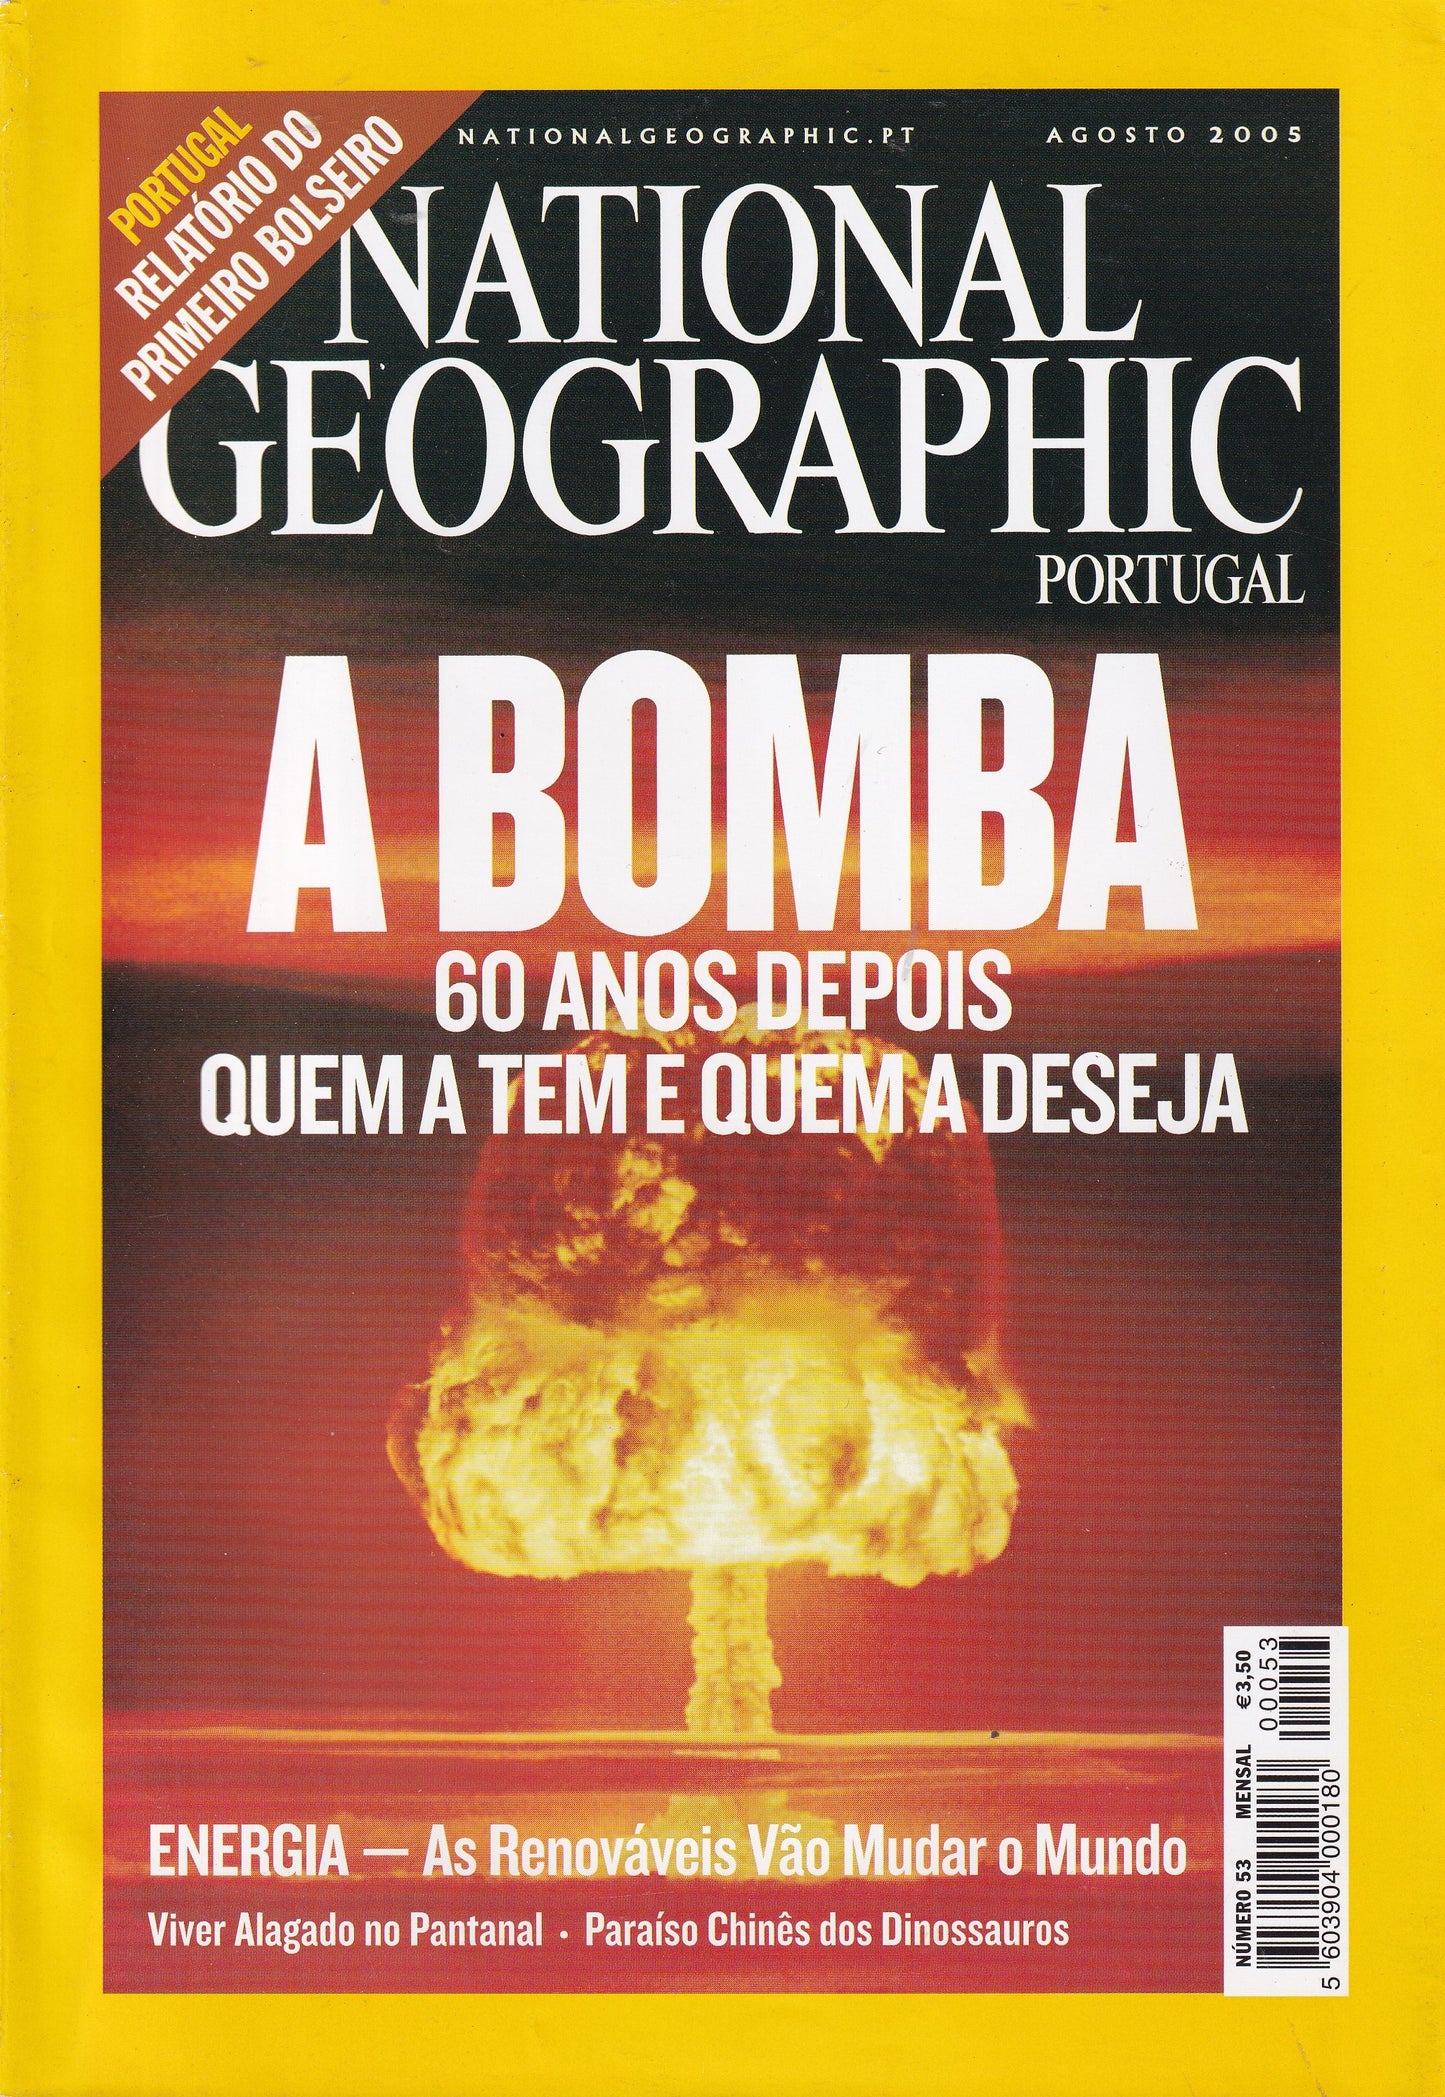 Revista National Geographic Portugal #53 (A Bomba ) Ago.2005 - USADO